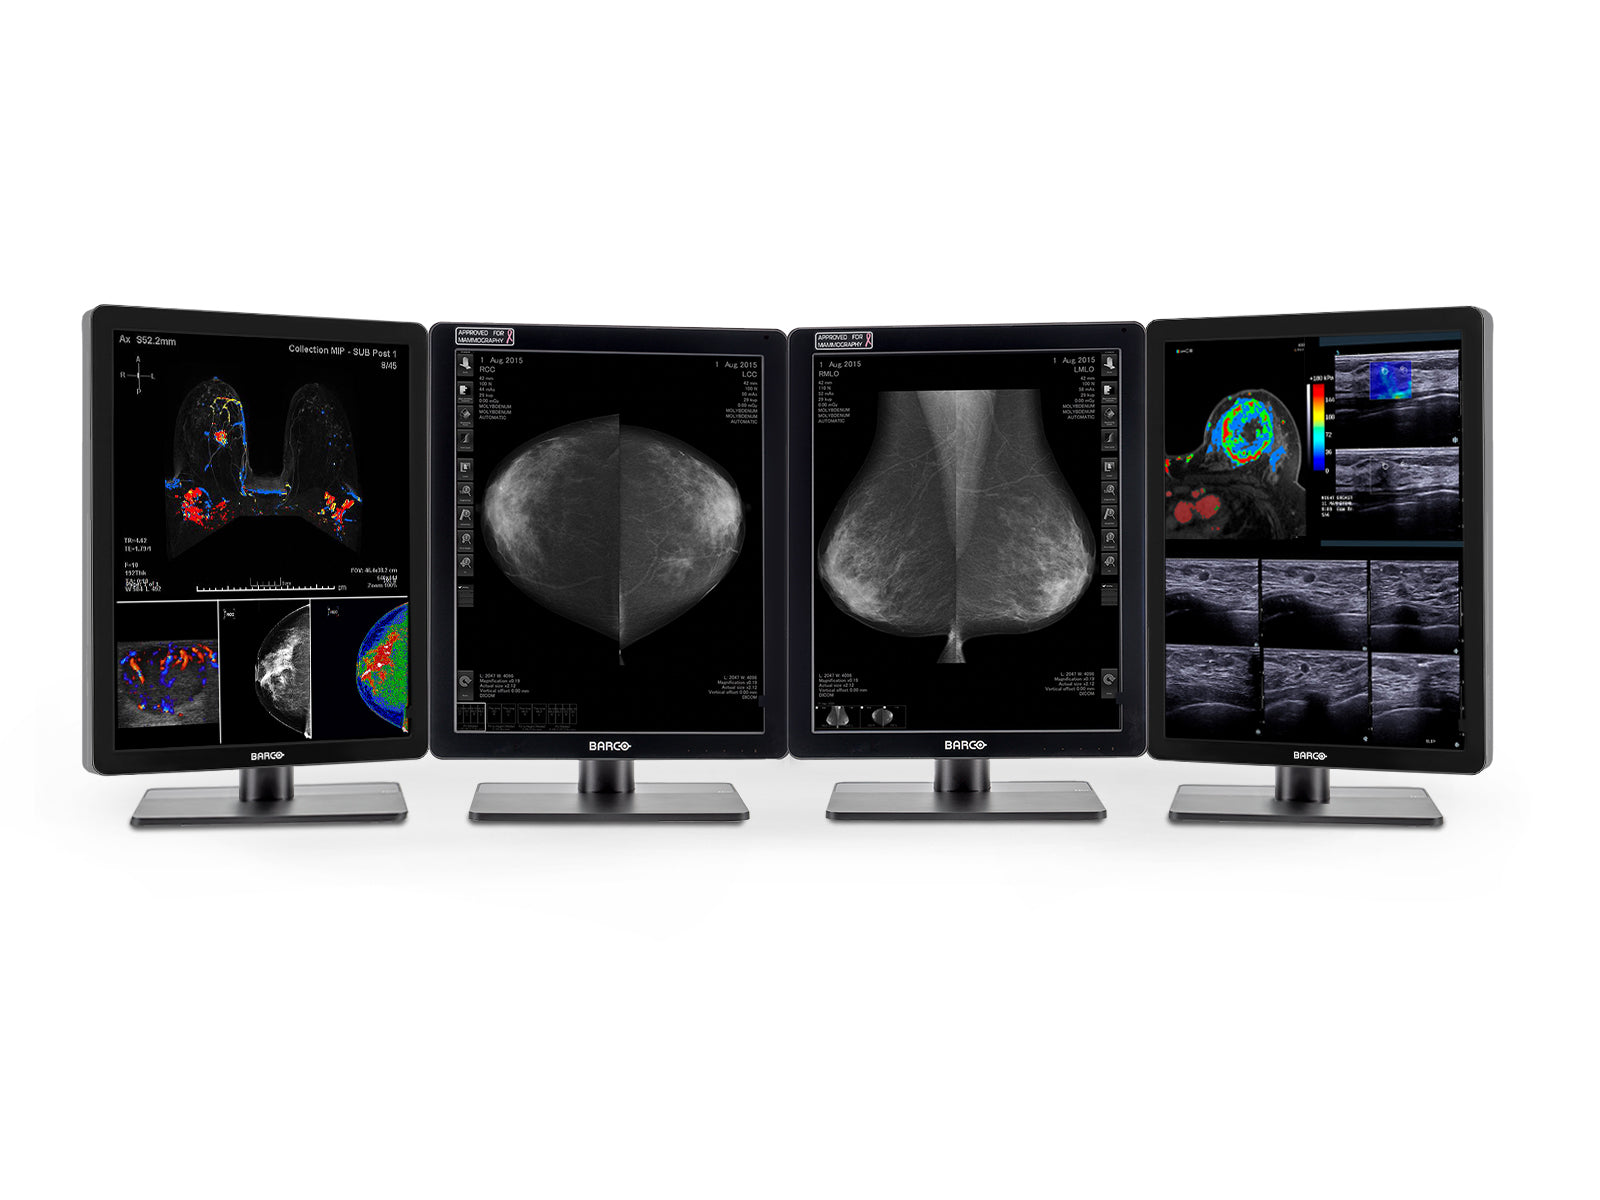 Configuración de lectura de mamografía cuádruple | Par (x2) Barco Tomo LED en escala de grises de 5MP + par (x2) Barco Pantallas en color de diagnóstico de 2 MP (2252MDGC)